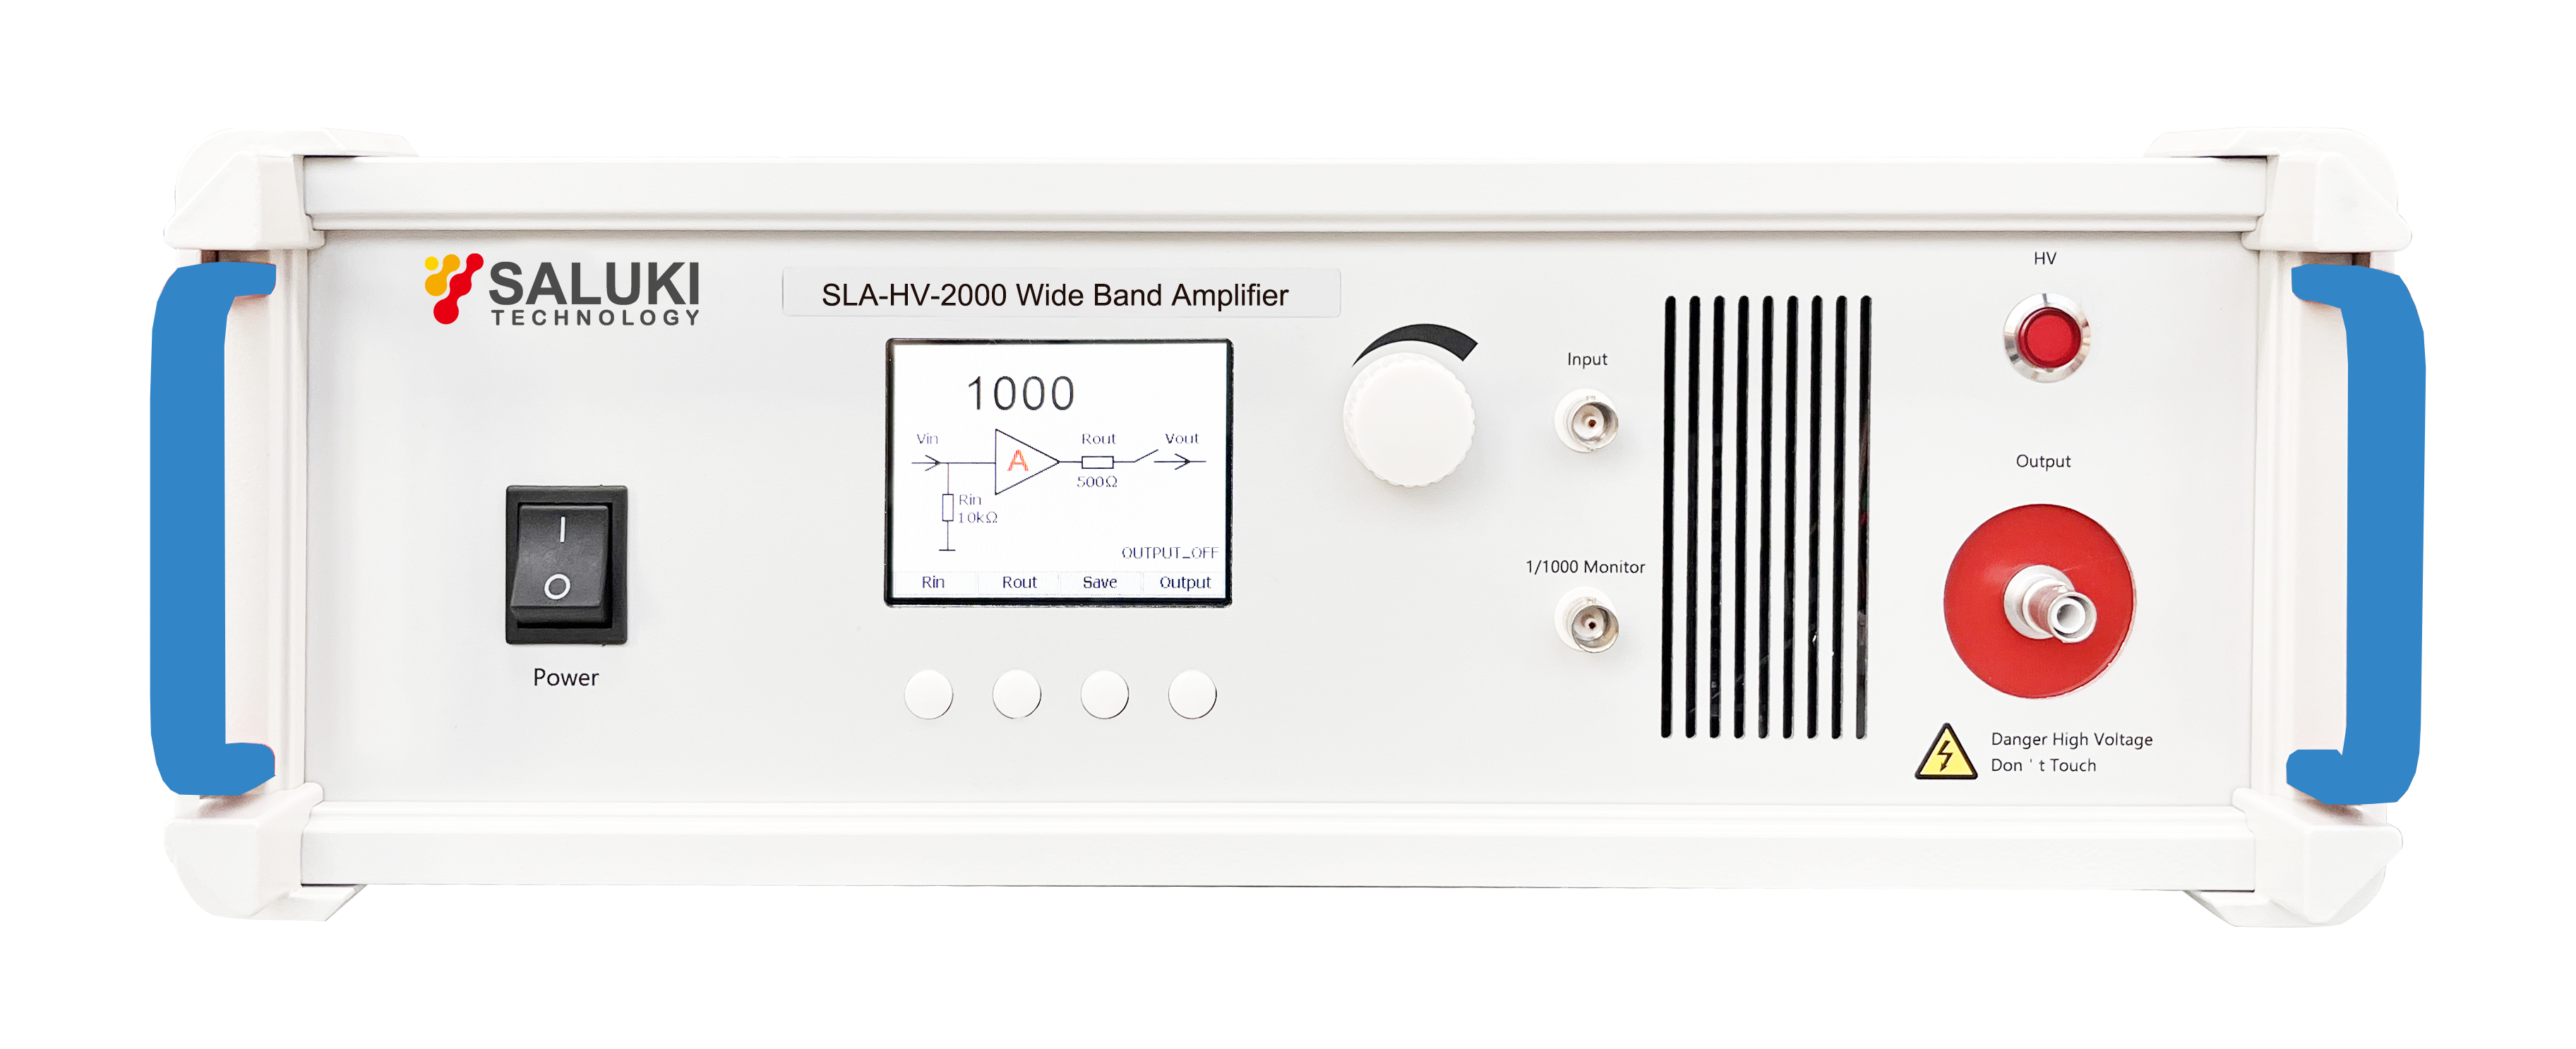 SLA-HV-2000 High Voltage Amplifier